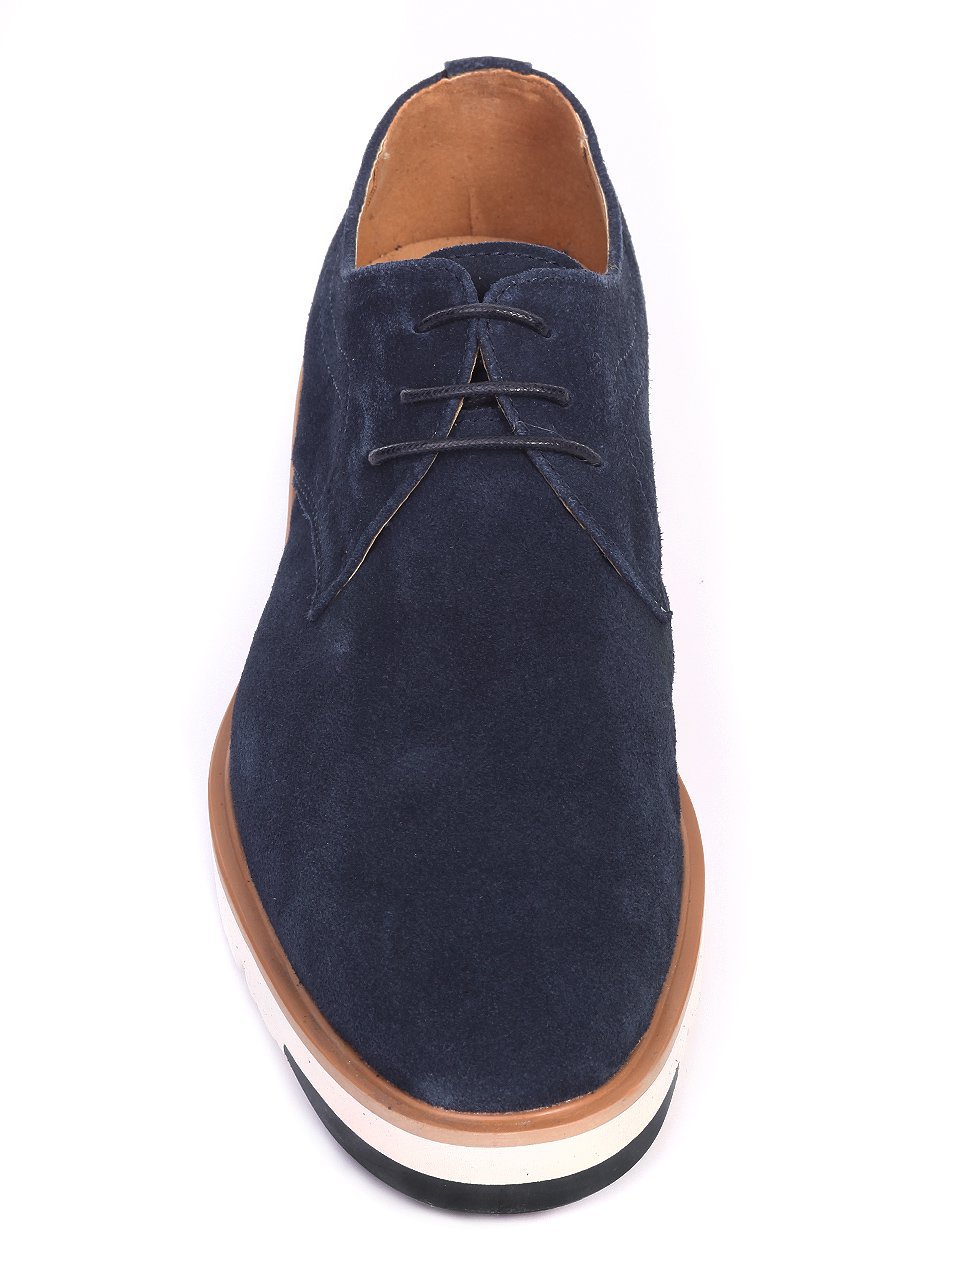 Ежедневни мъжки обувки от естествен велур в синьо 7N-17451 navy